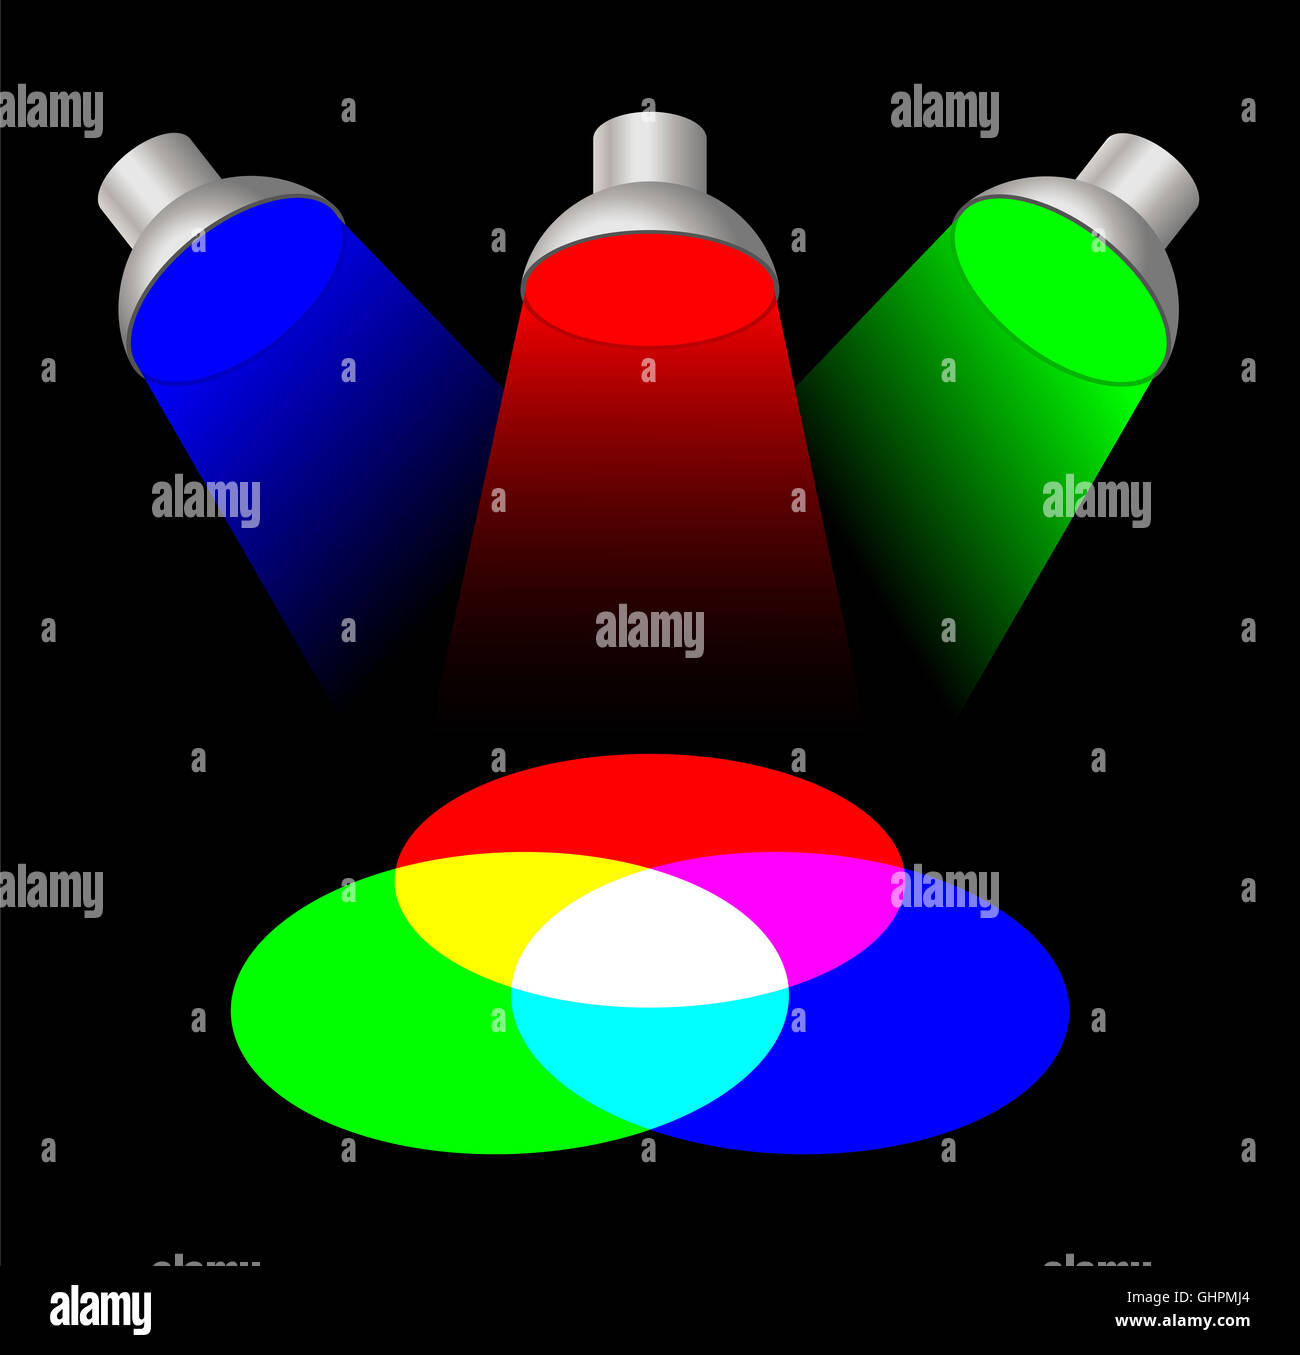 Mélange de couleurs avec des projecteurs. Les trois couleurs de lumière primaires rouge, vert et bleu mélangés donne le blanc. Banque D'Images